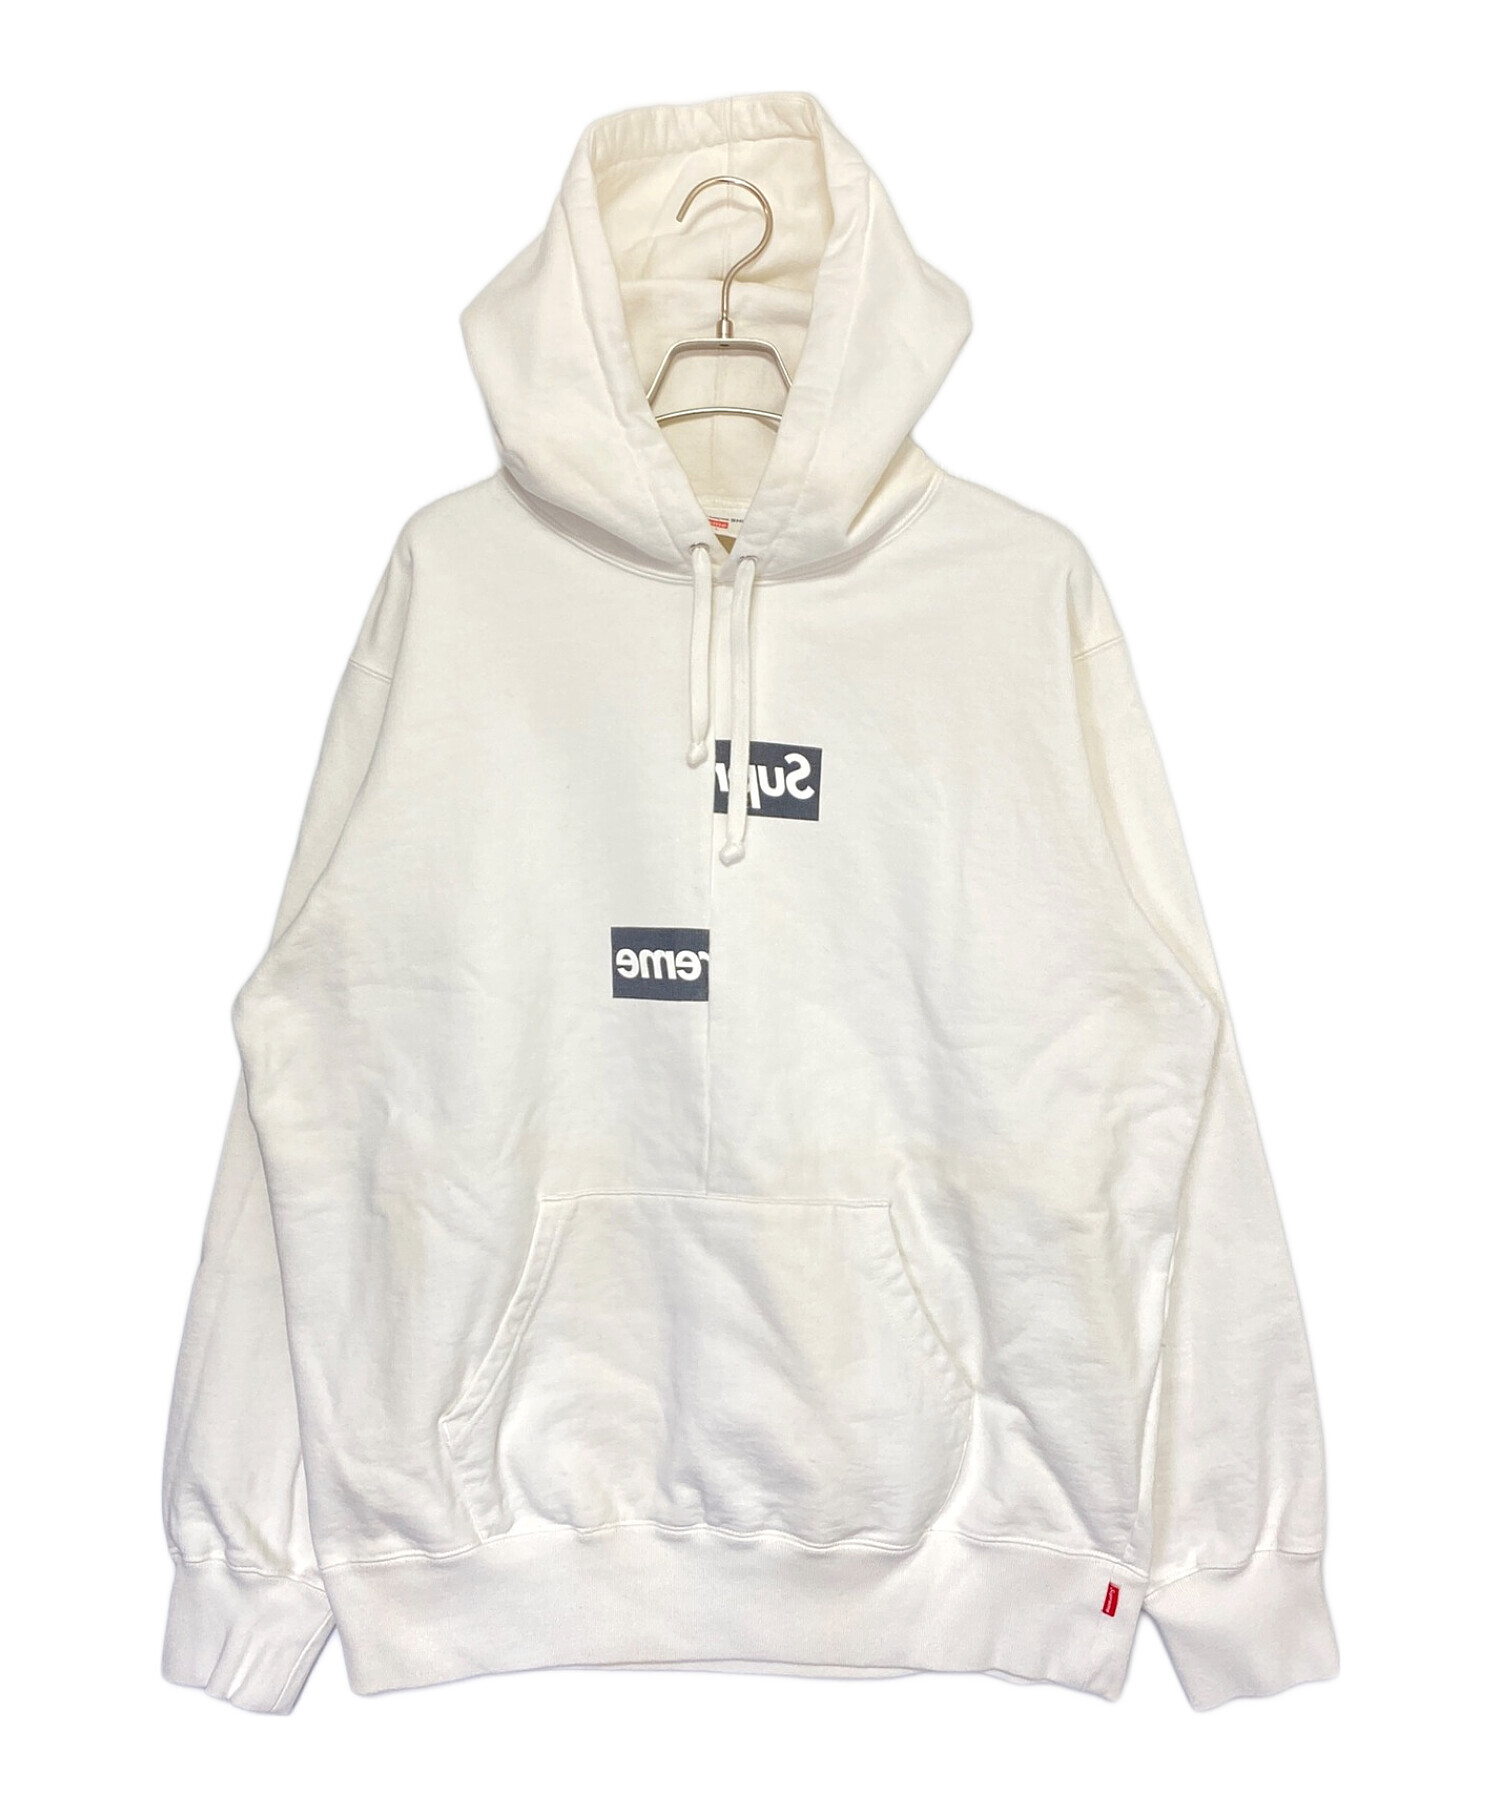 激安価格L CDG SHIRT Box logo Hooded sweatshirt パーカー